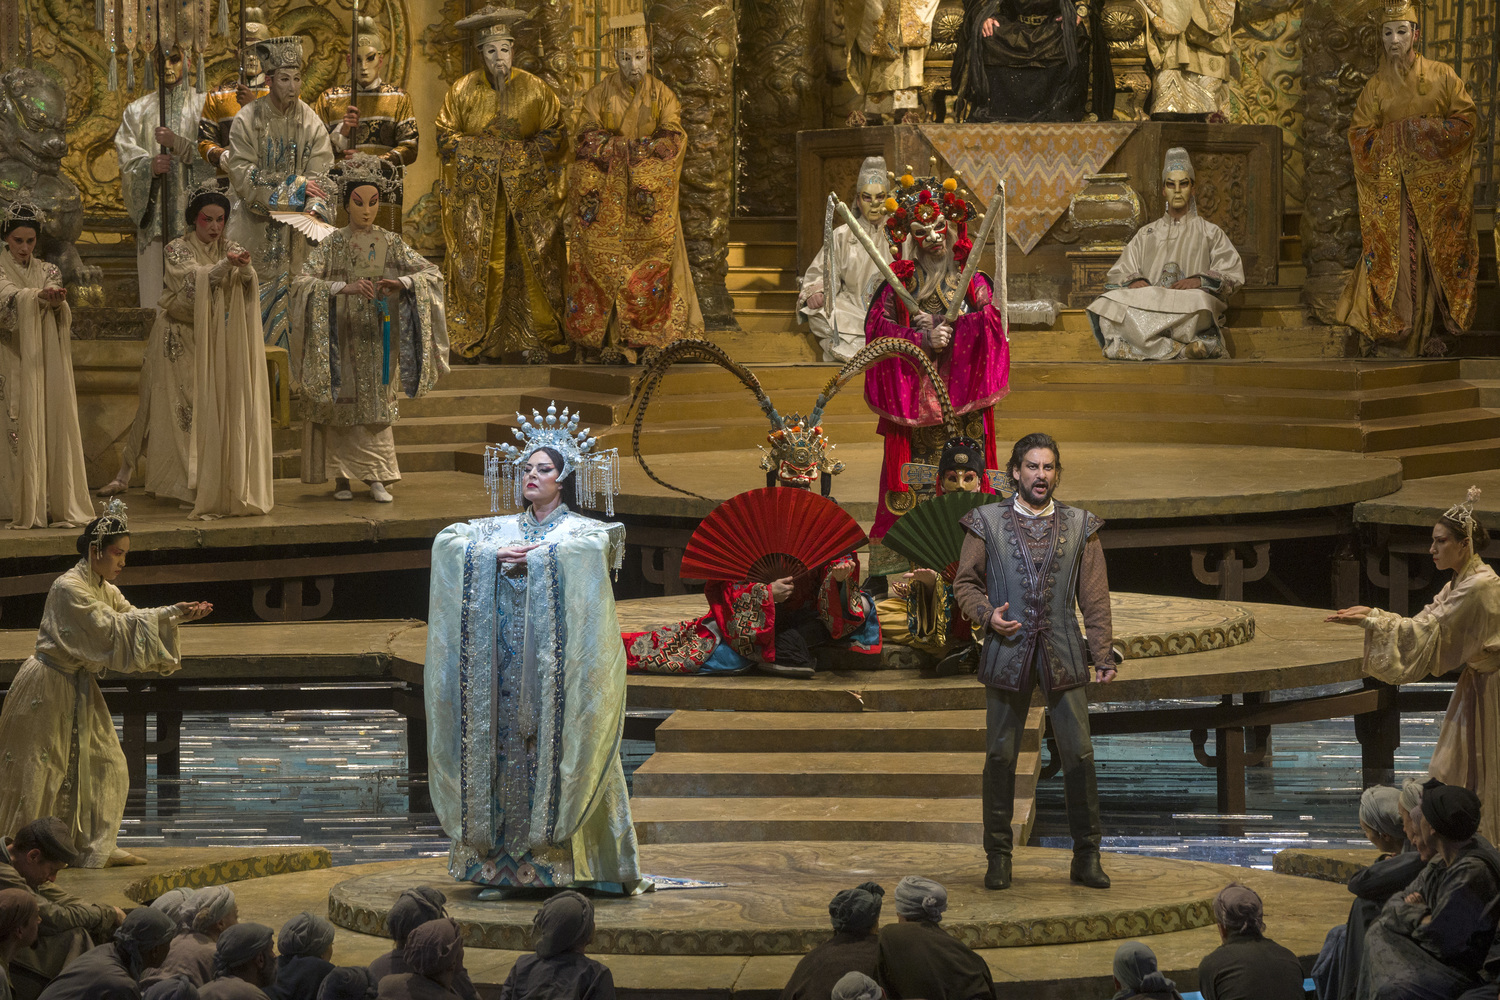 Review: TURANDOT at Metropolitan Opera 